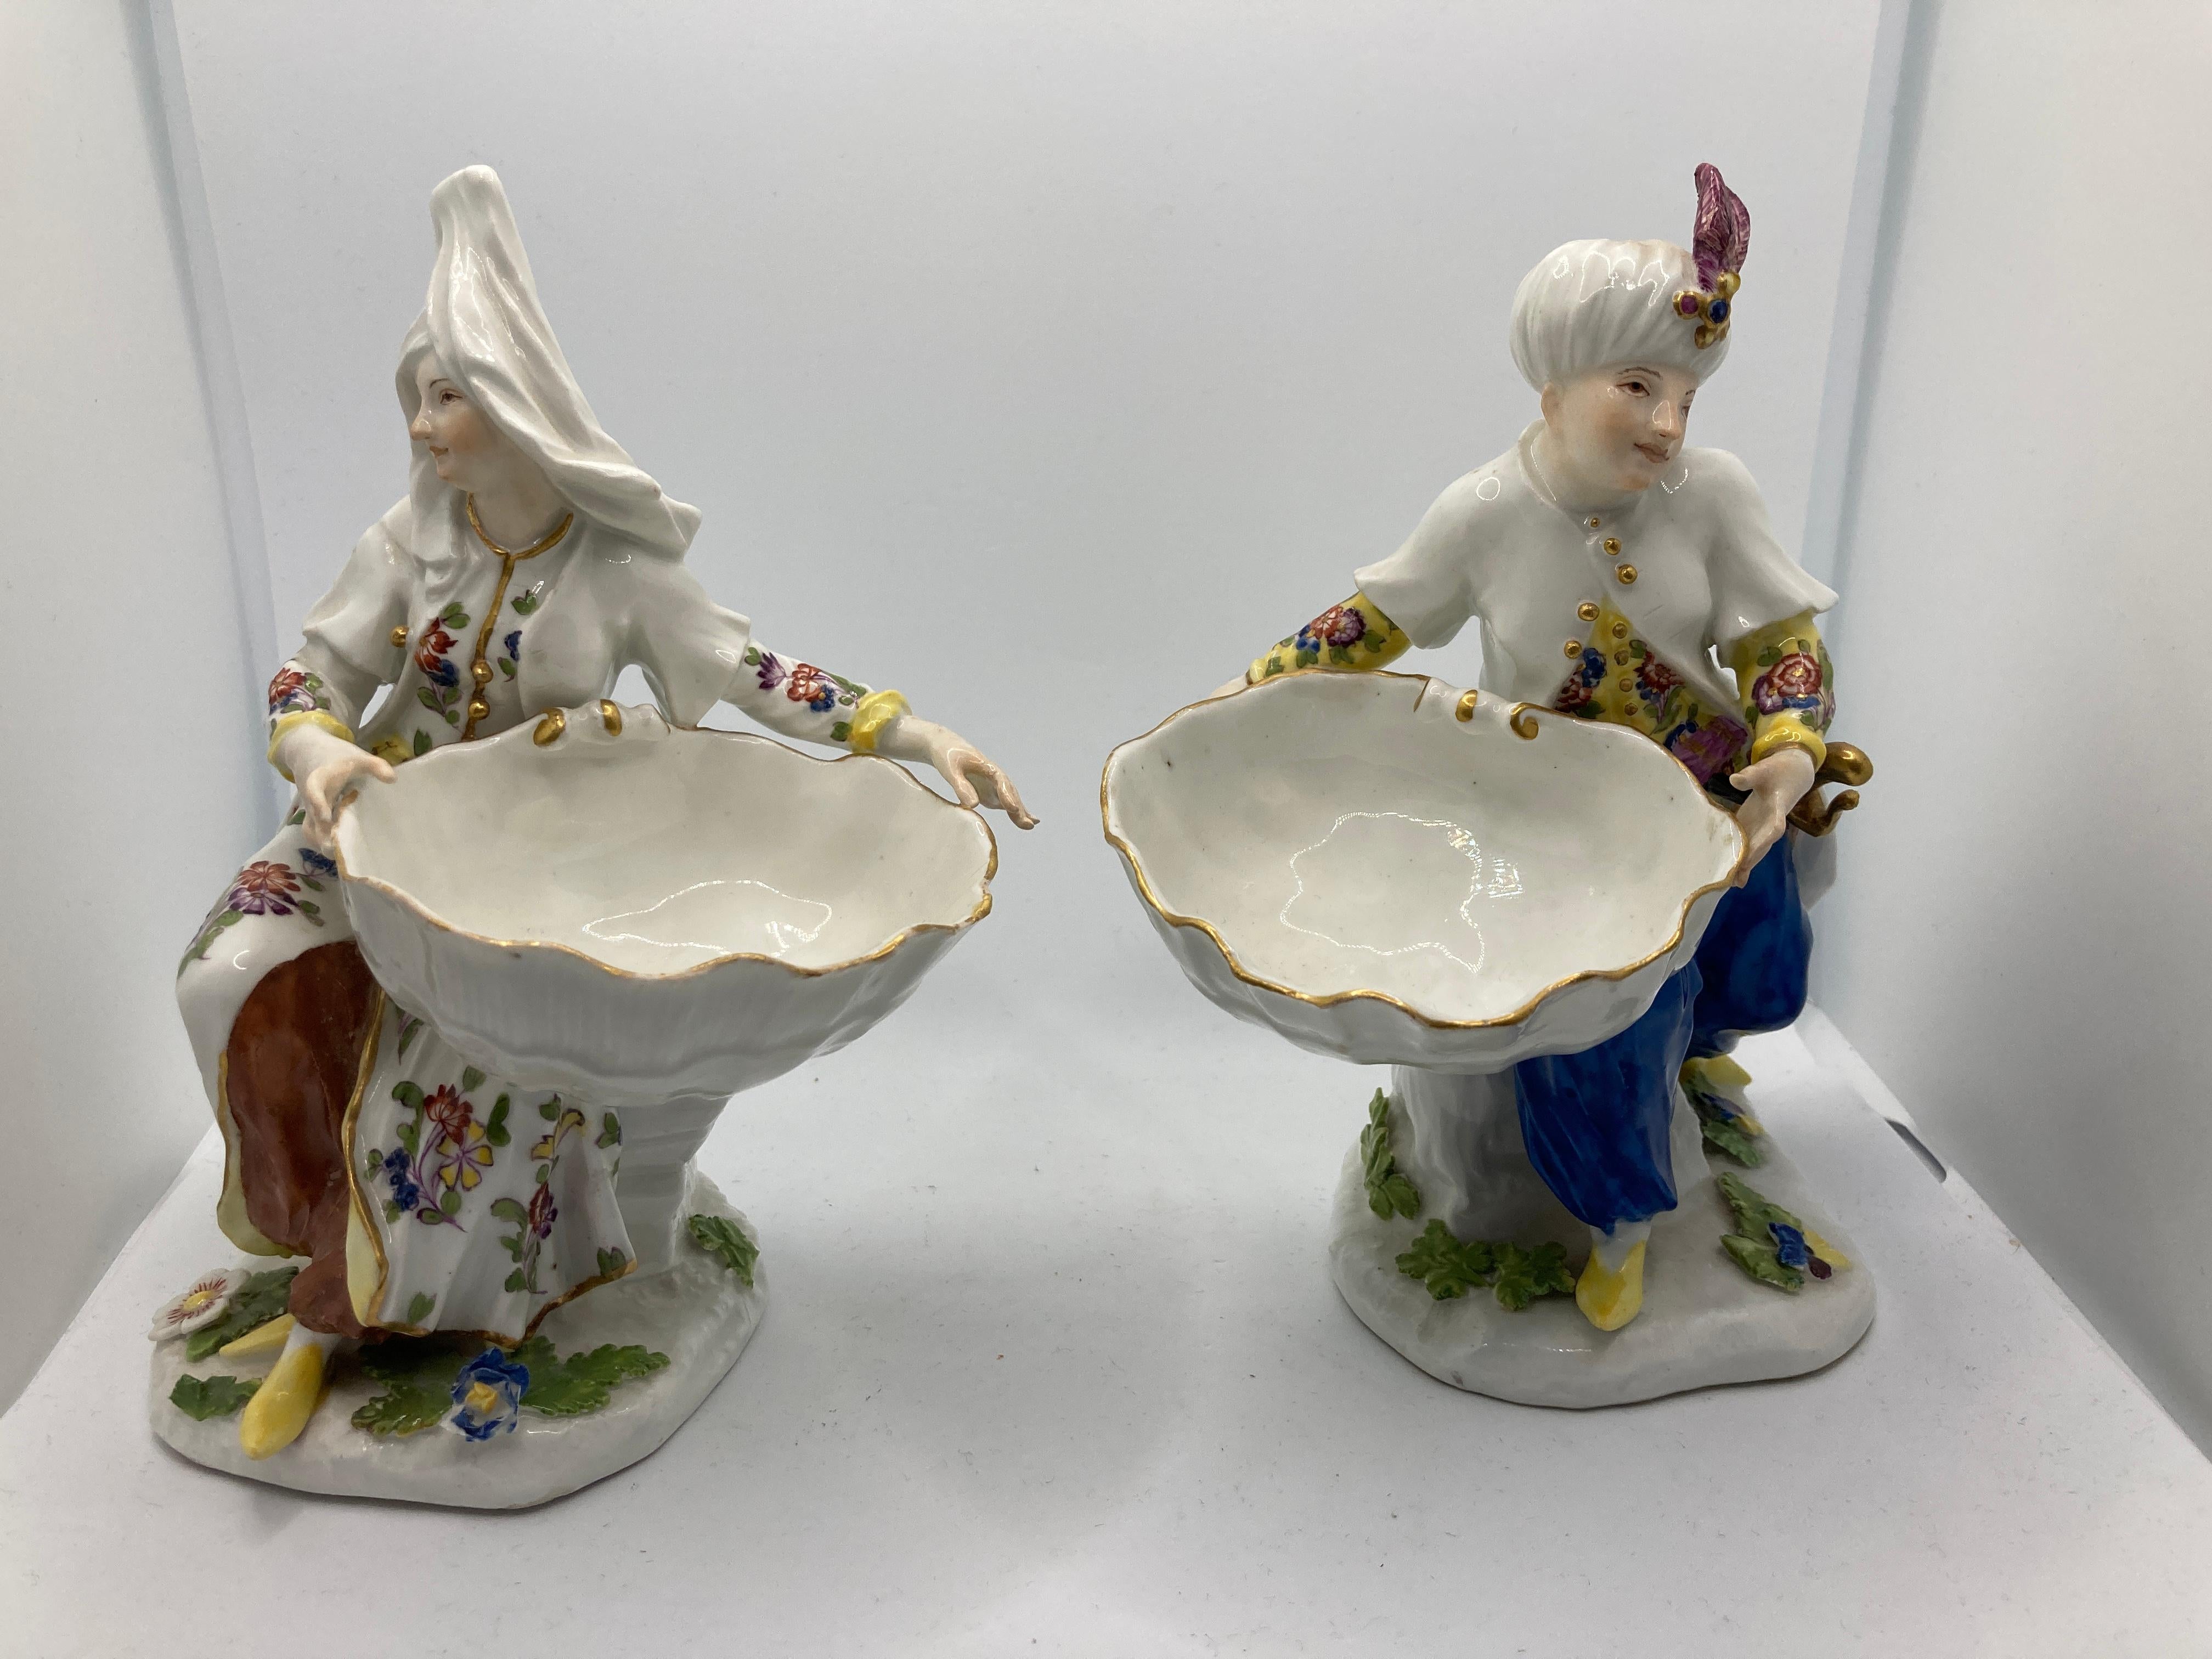 18. Jahrhundert Meissener Porzellan, Paar türkische Figuren mit Süßspeise / Salzschale. Diese Süßigkeitenfiguren wurden um 1745 hergestellt, die Originalmodelle stammen von J. F. Eberlain, und sie zeigen die damalige Mode des Orientalismus. Die